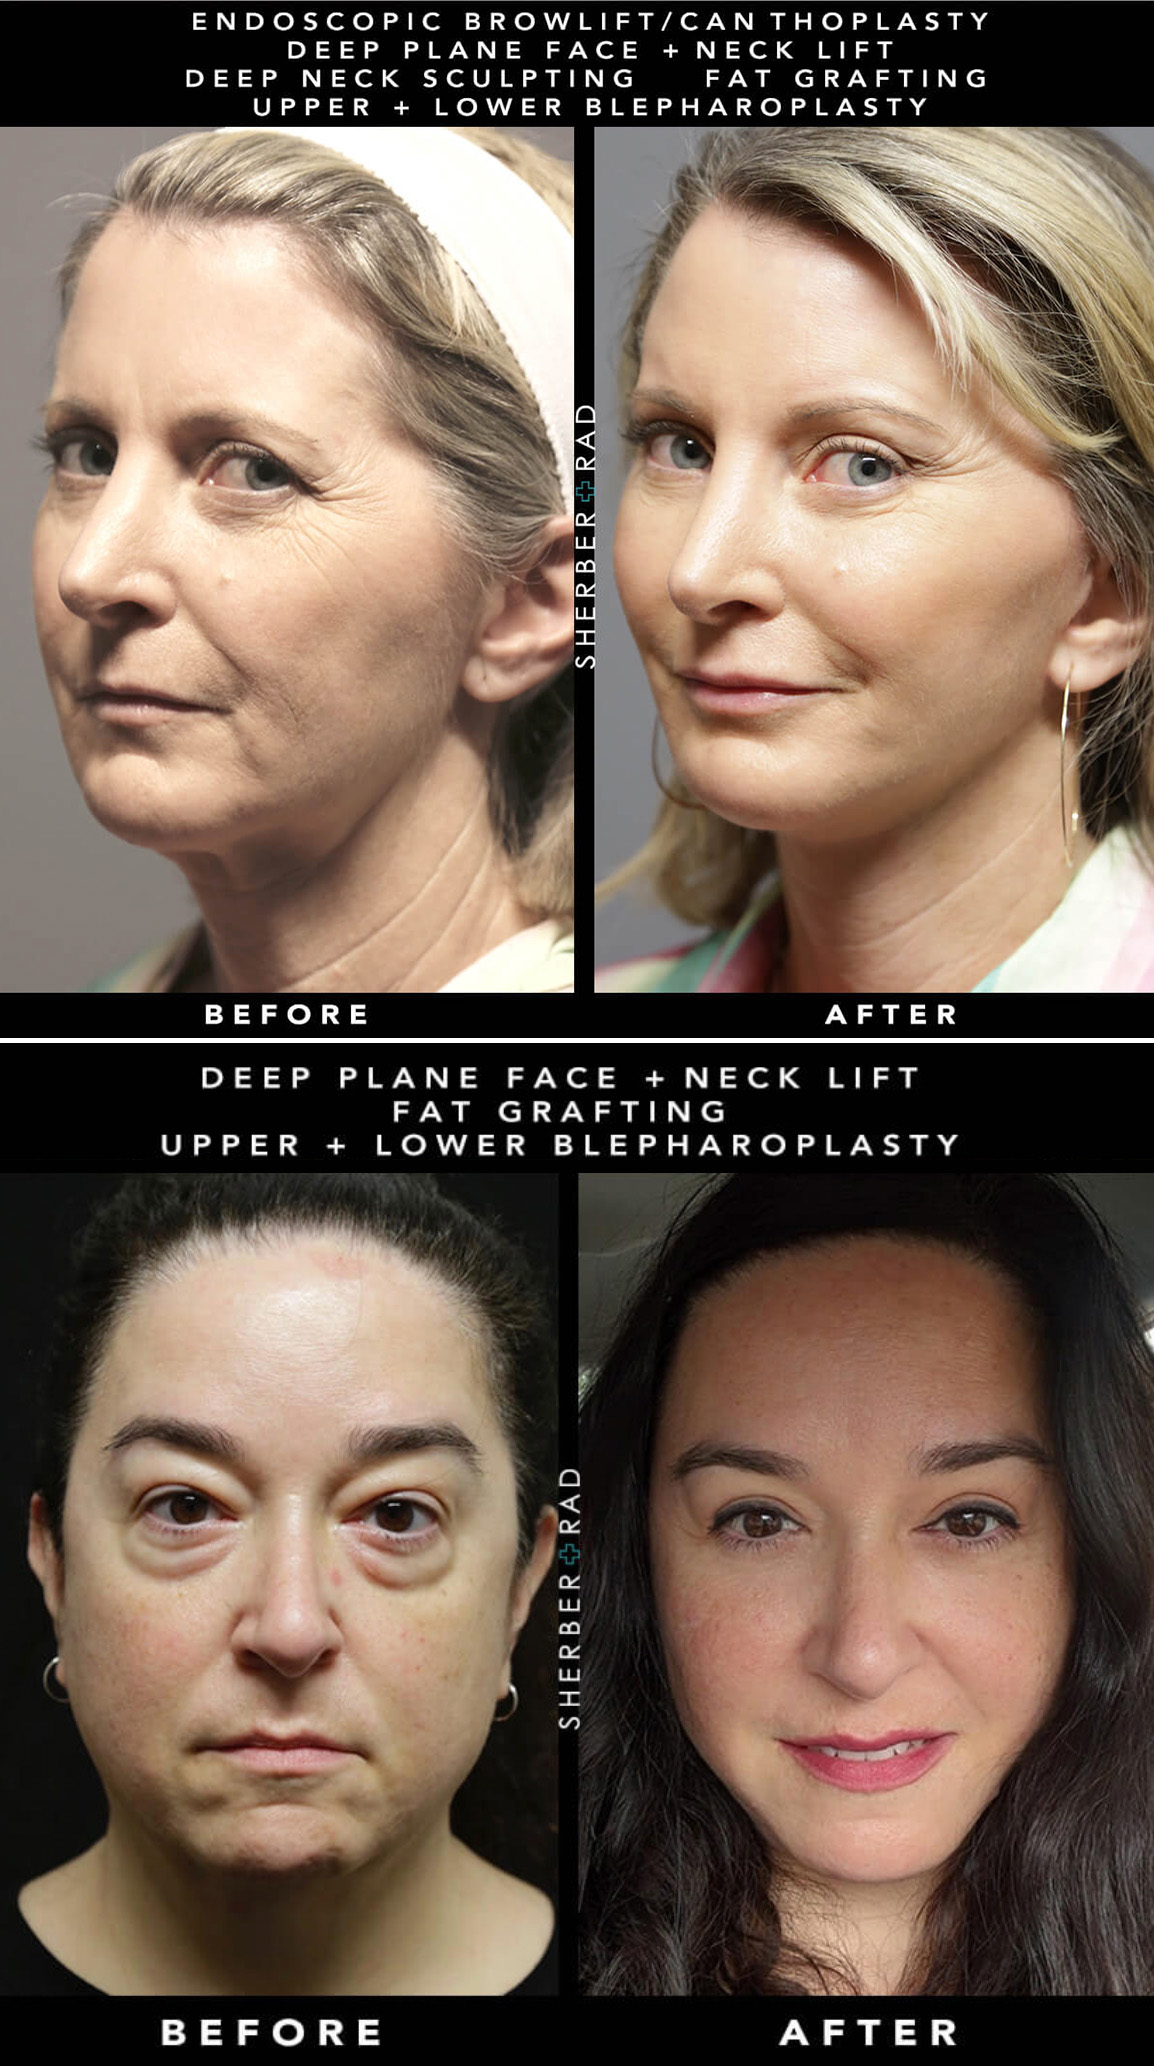 Facial Sculpting-Face Lift, Non-Surgical Facial Aesthetics